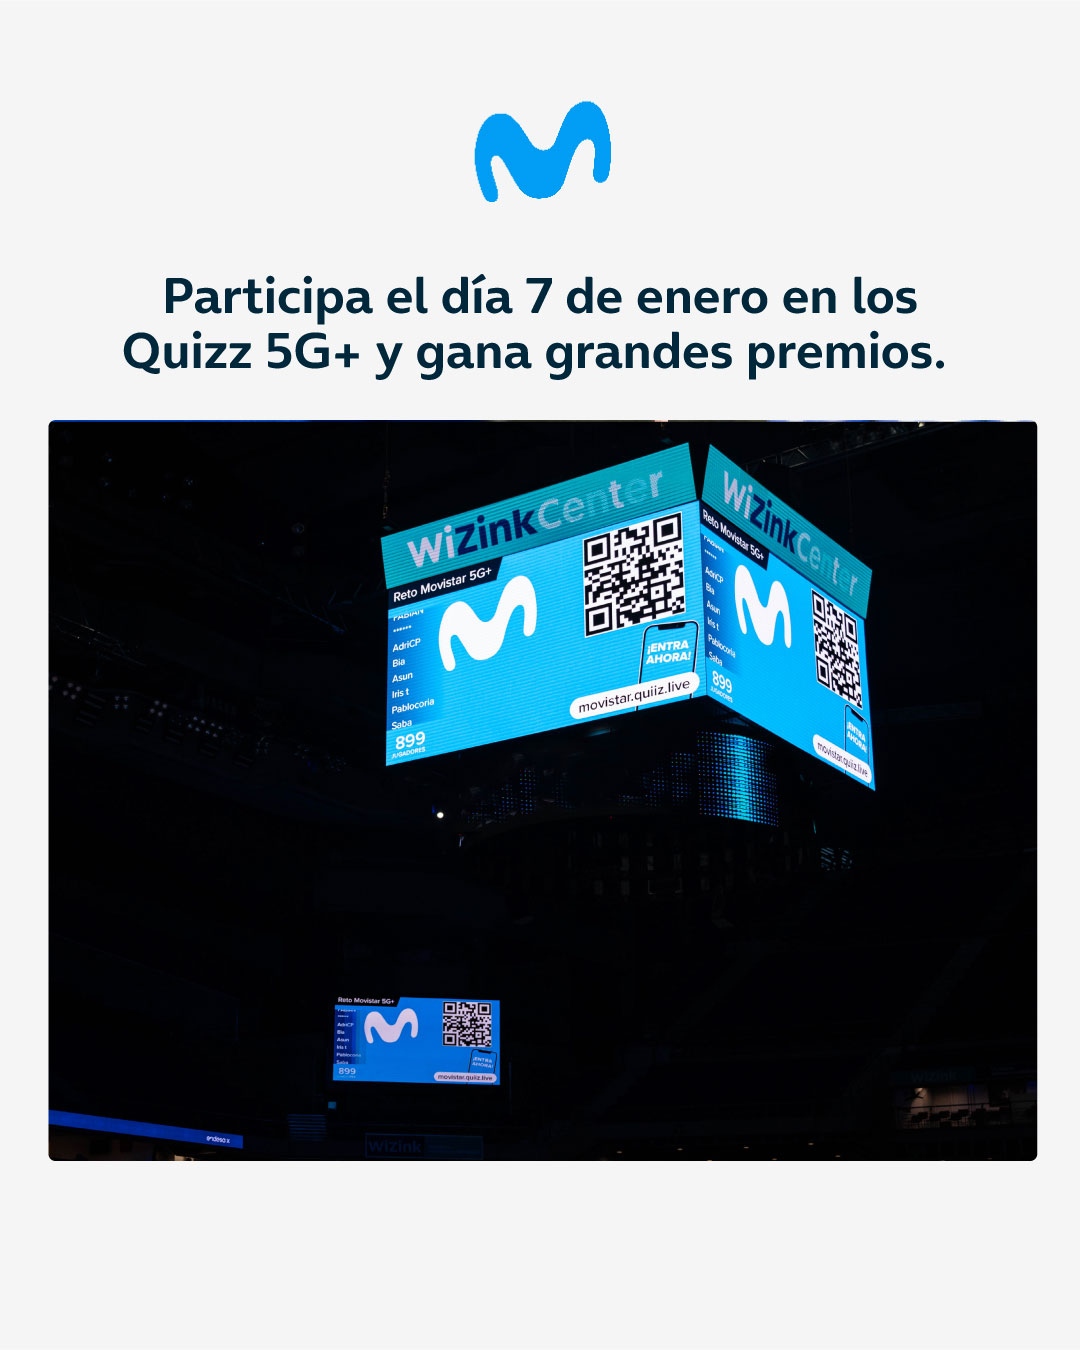 quizz Movistar 5G+ con grandes premios en los partidos del 7 de enero